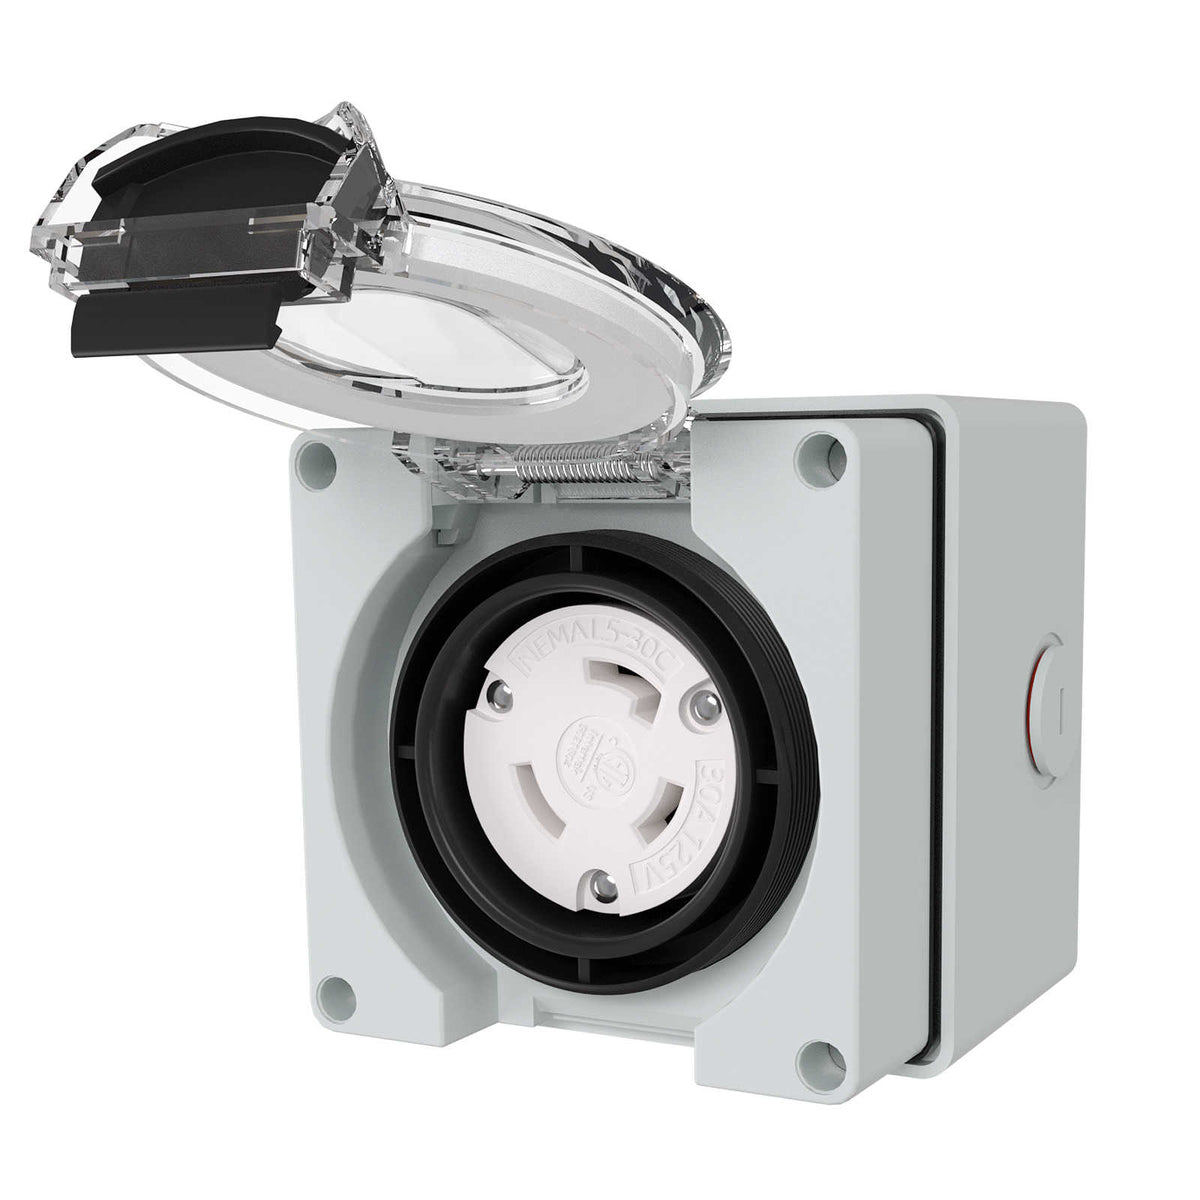 NEMA L5-30C 30Amp Locking Female Plug Box For Generators Welding Machines